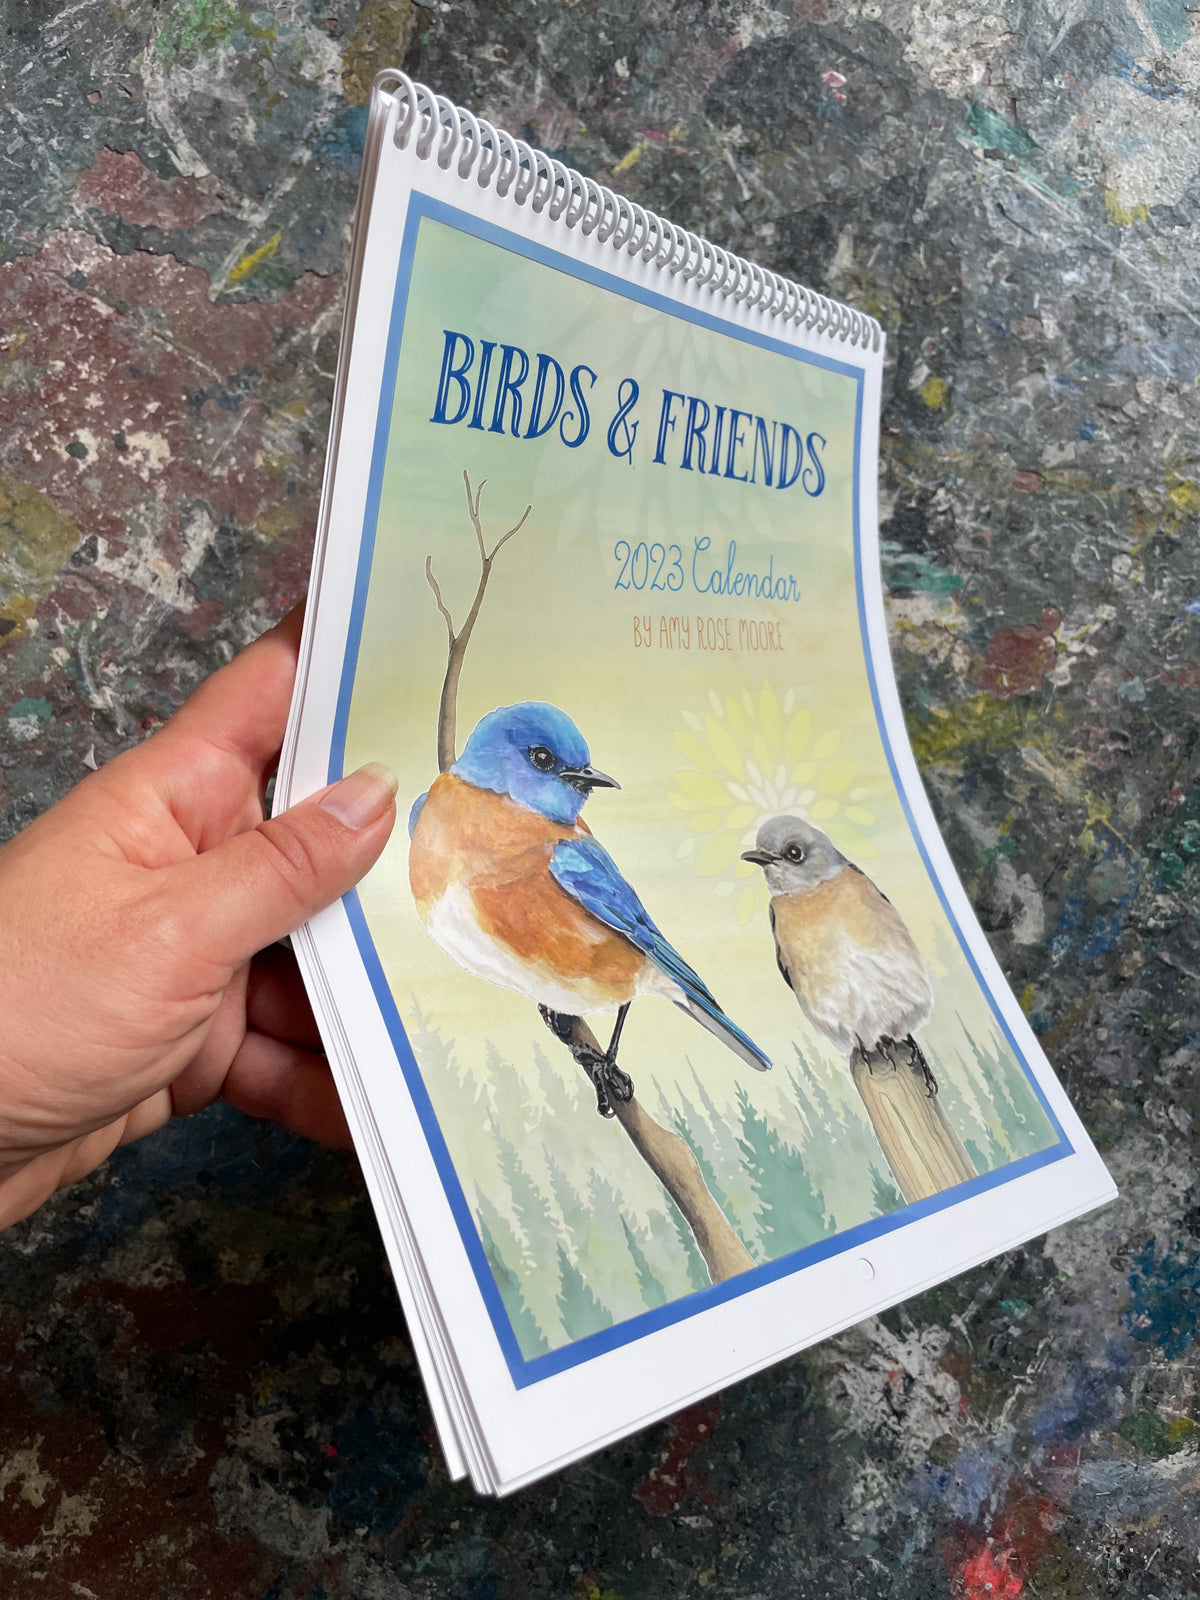 Birds and Friends - 2023 Calendar